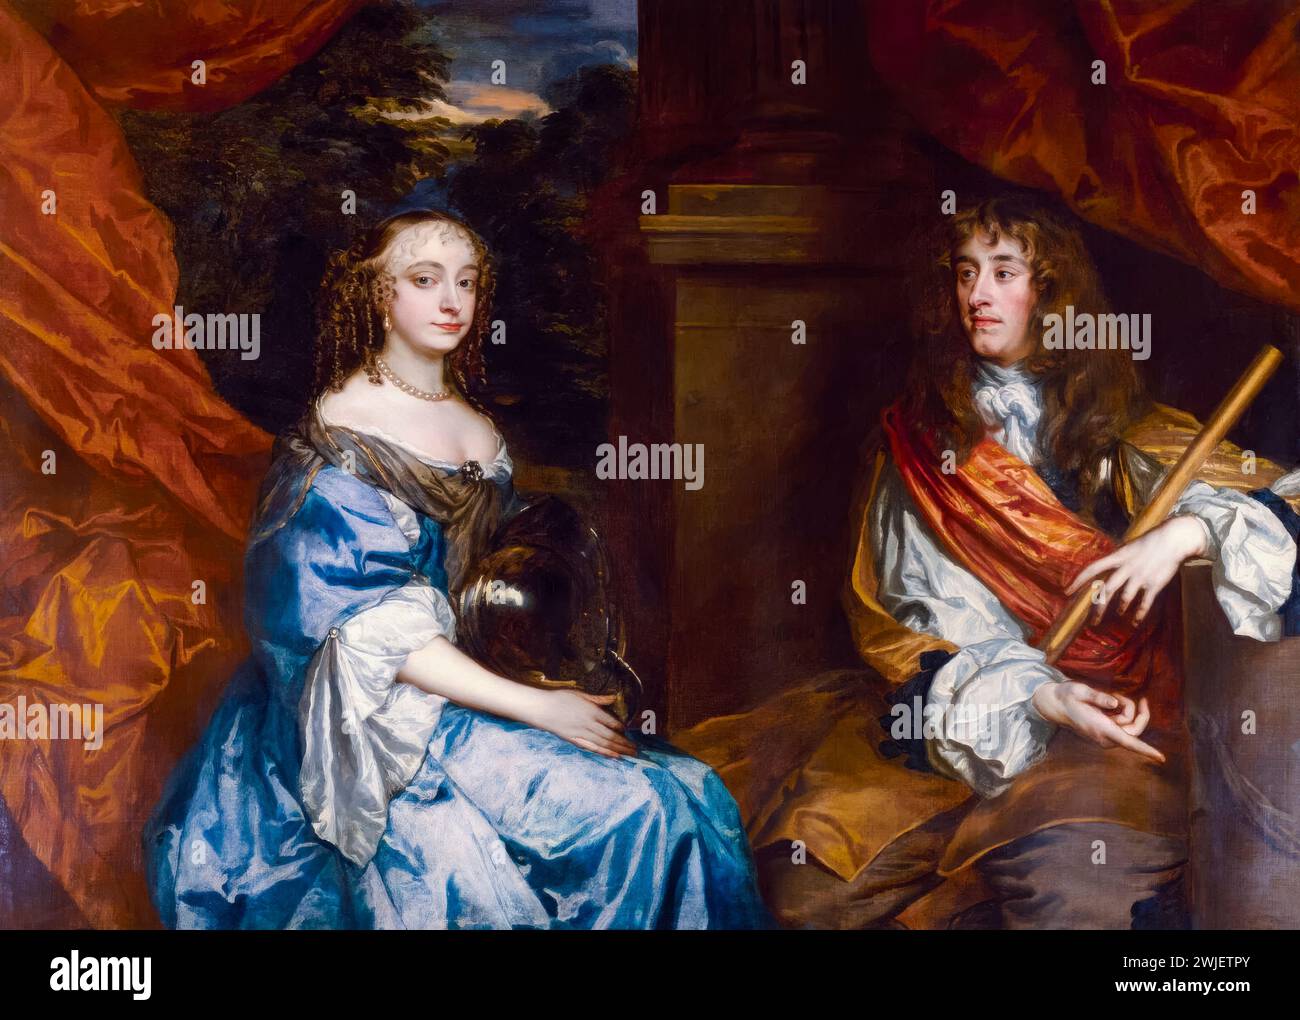 Anne Hyde (1637-1671), duchessa di York e suo marito Giacomo, duca di York (1633-1701), il futuro re Giacomo II e VII, ritratto a olio su tela di Sir Peter Lely, 1661-1662 Foto Stock